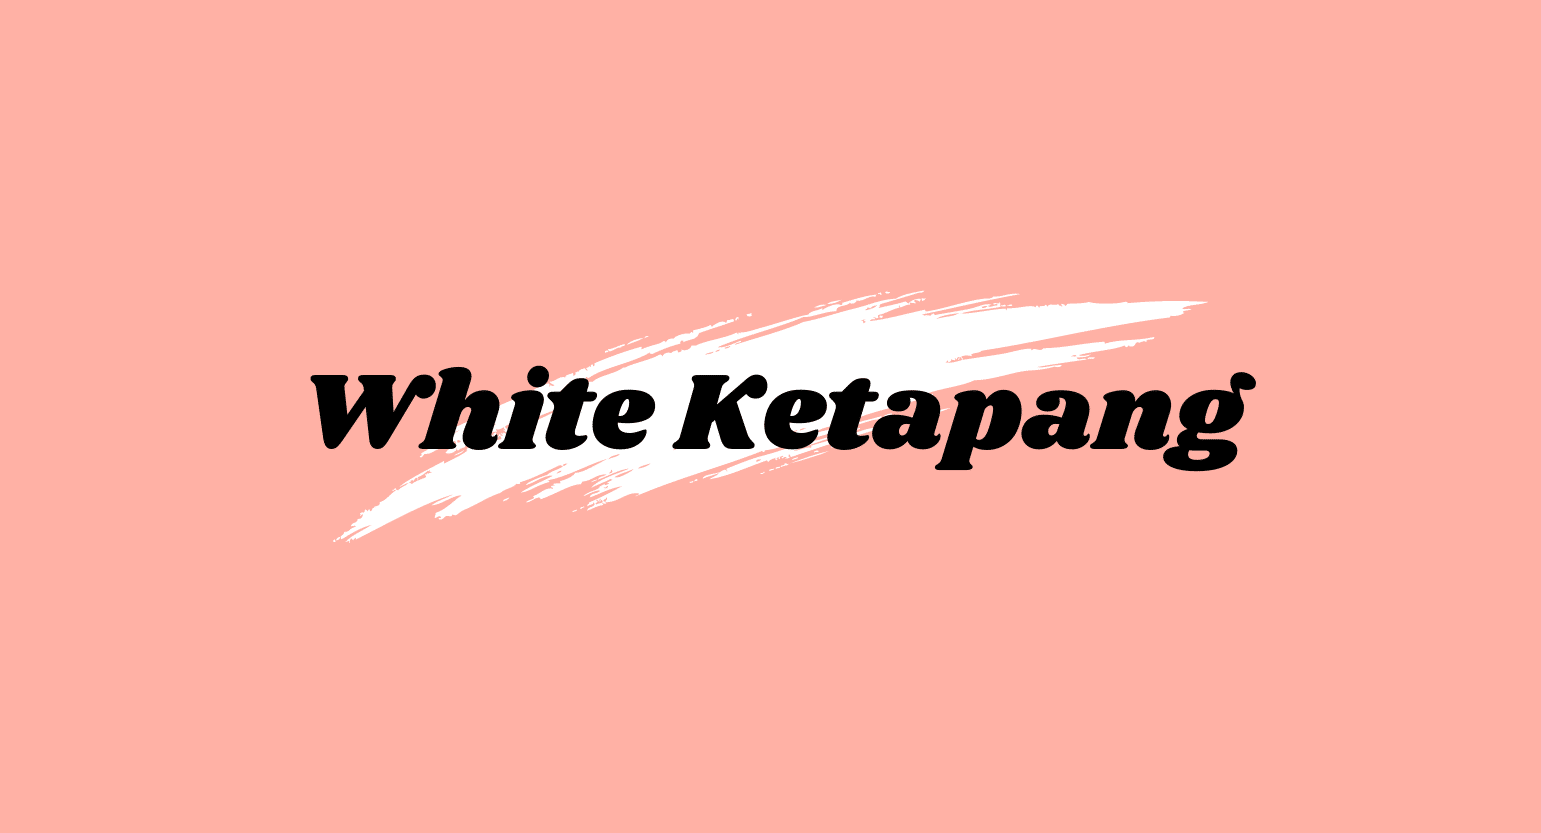 White Ketapang Kratom: More Energy Than Coffee, Plus Mood-Boosting Capabilities